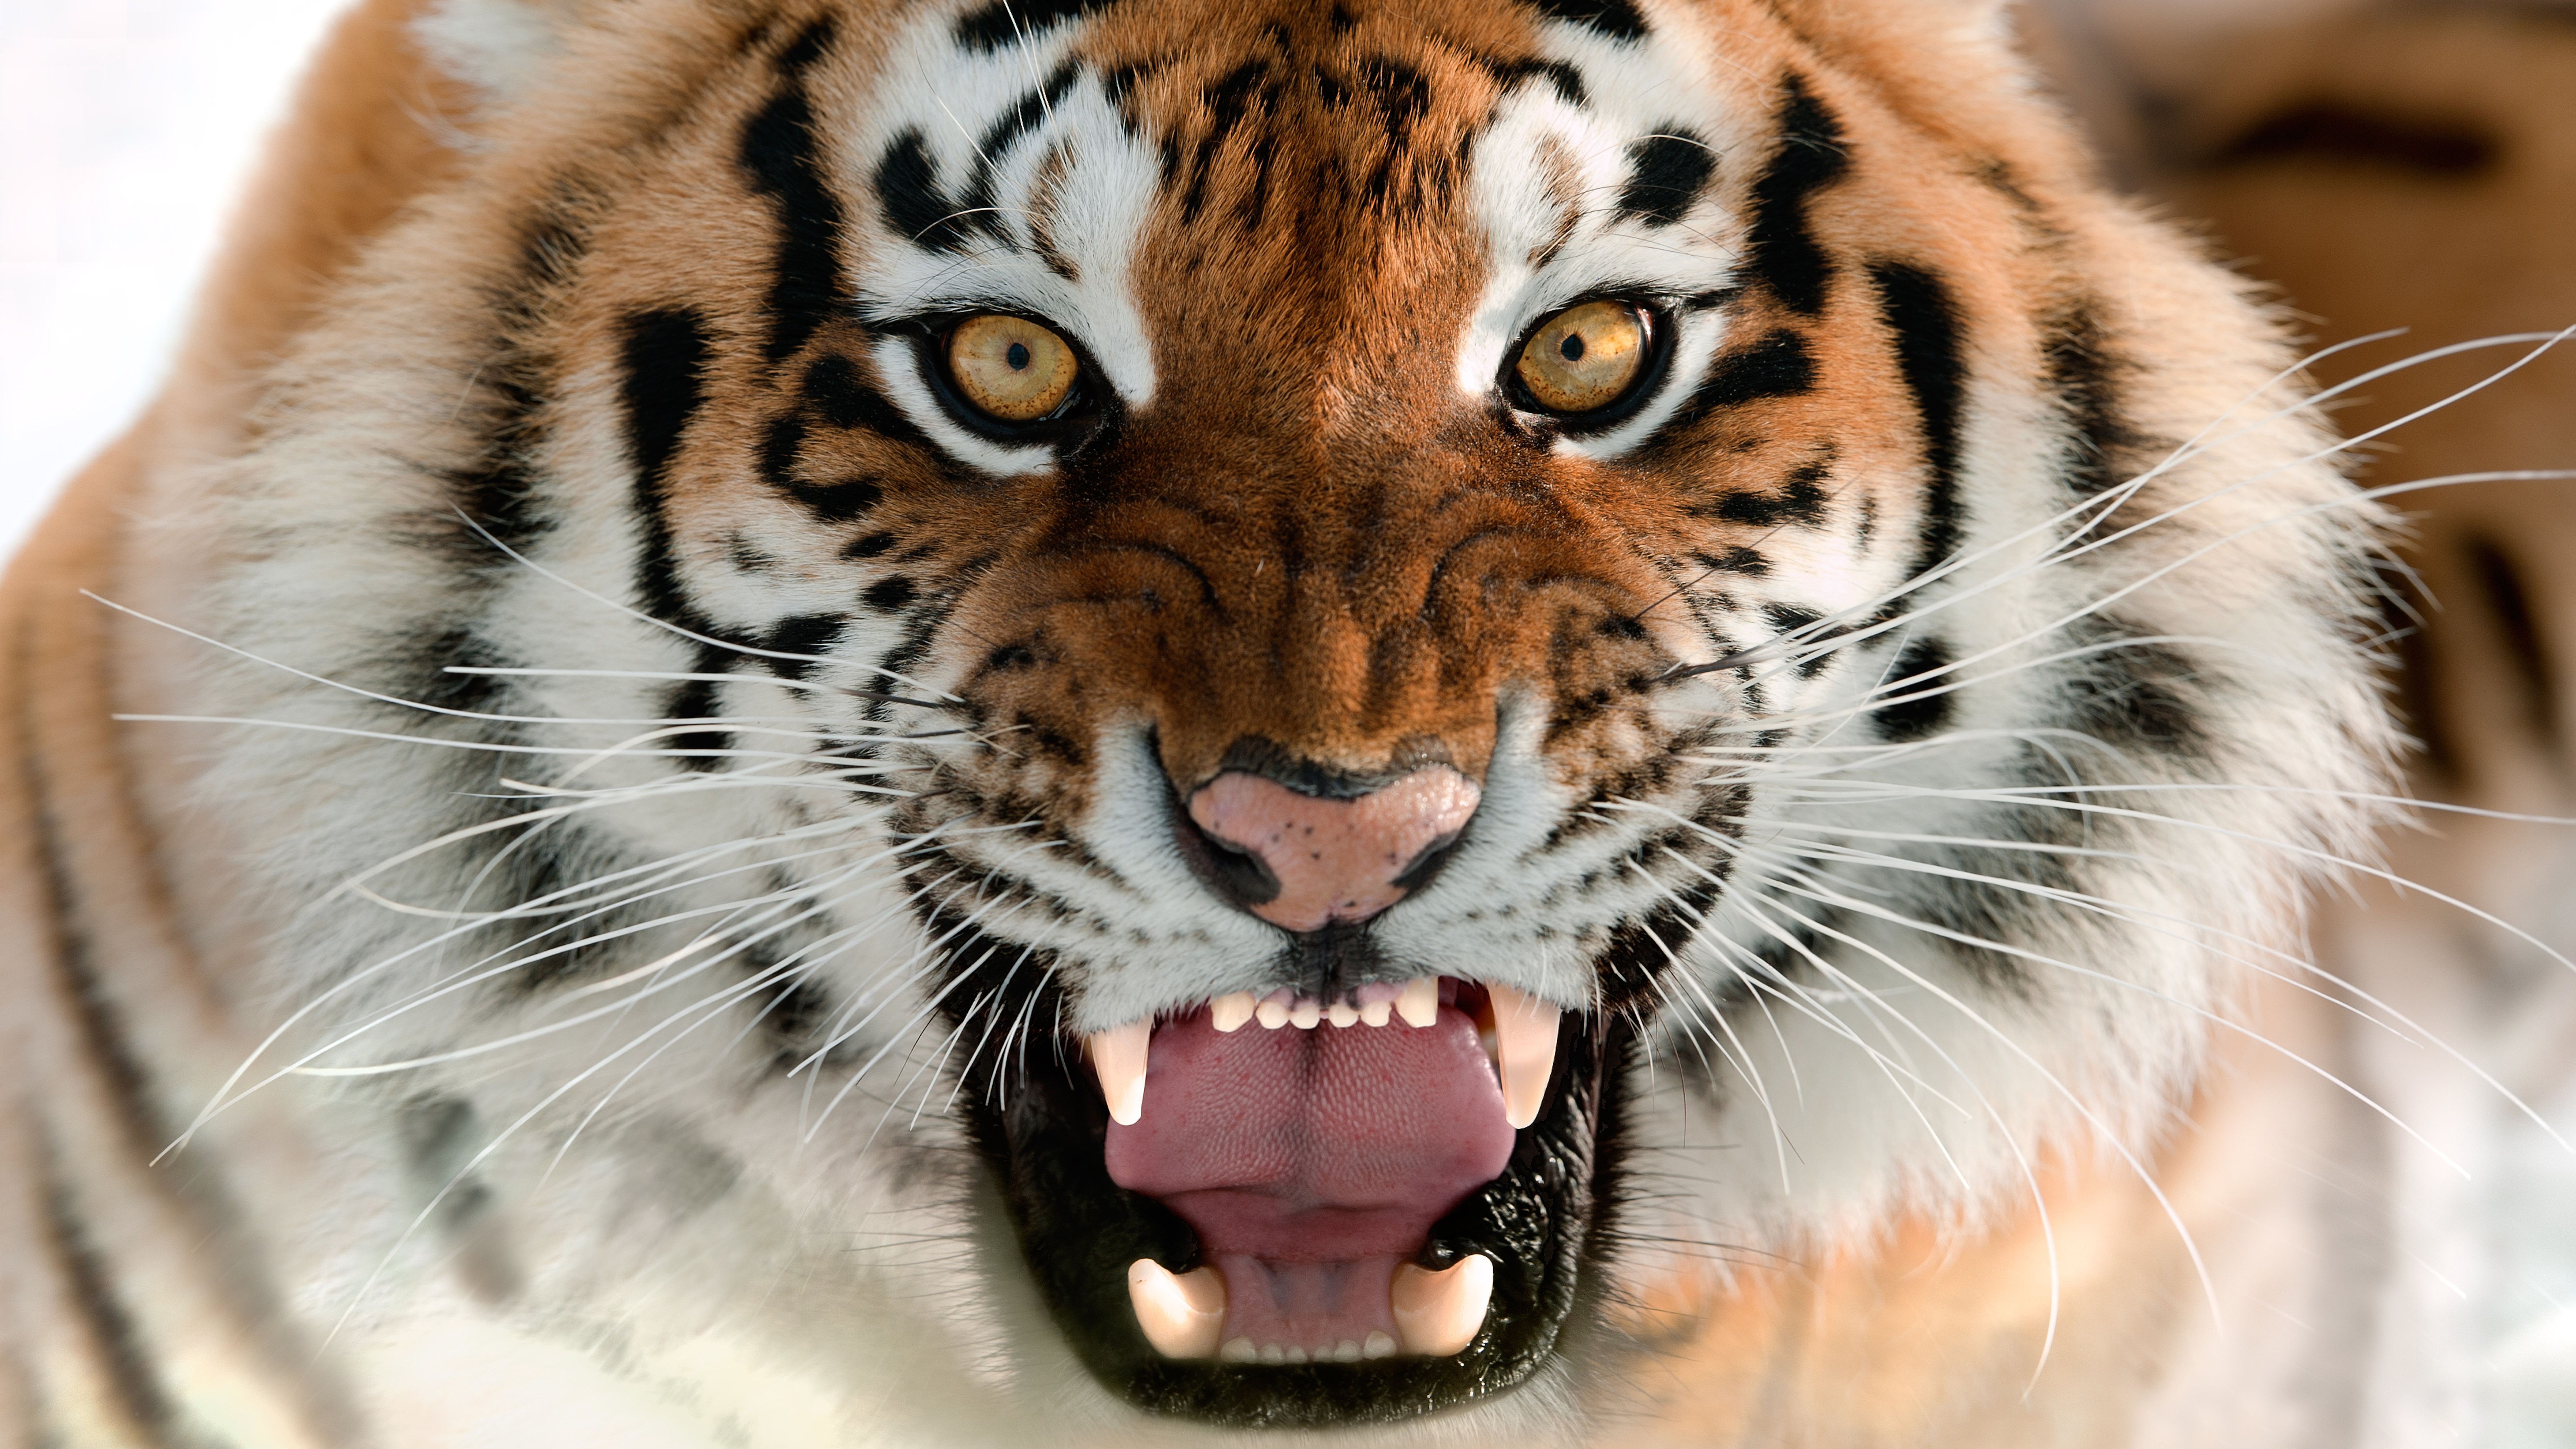 tigre wallpaper,tiger,mammal,vertebrate,wildlife,terrestrial animal